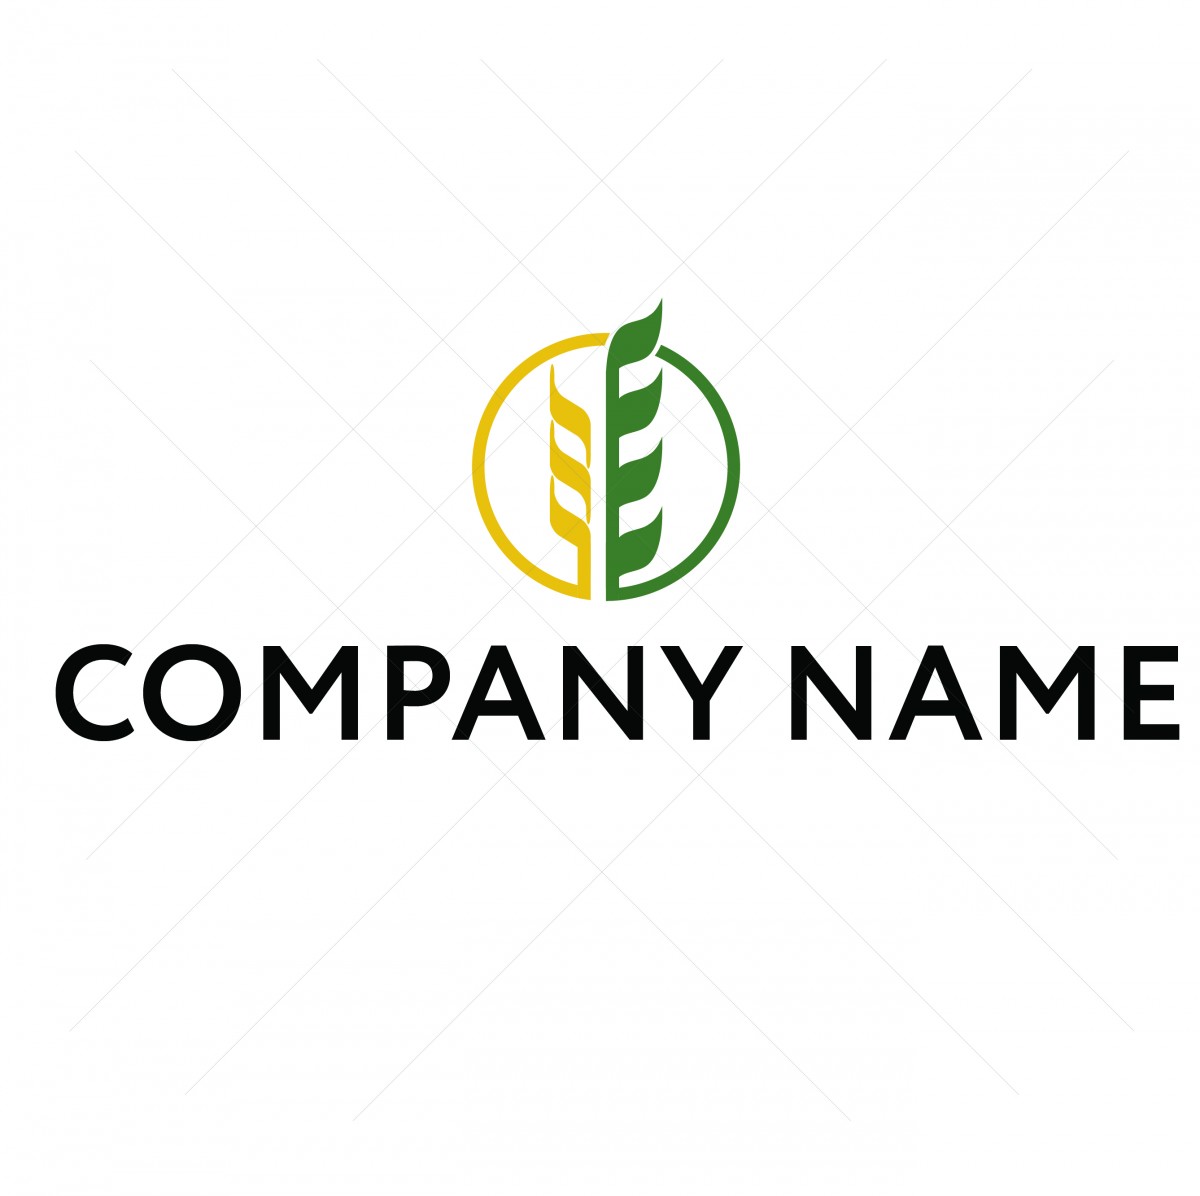 Логотип компании, сельские культуры 1